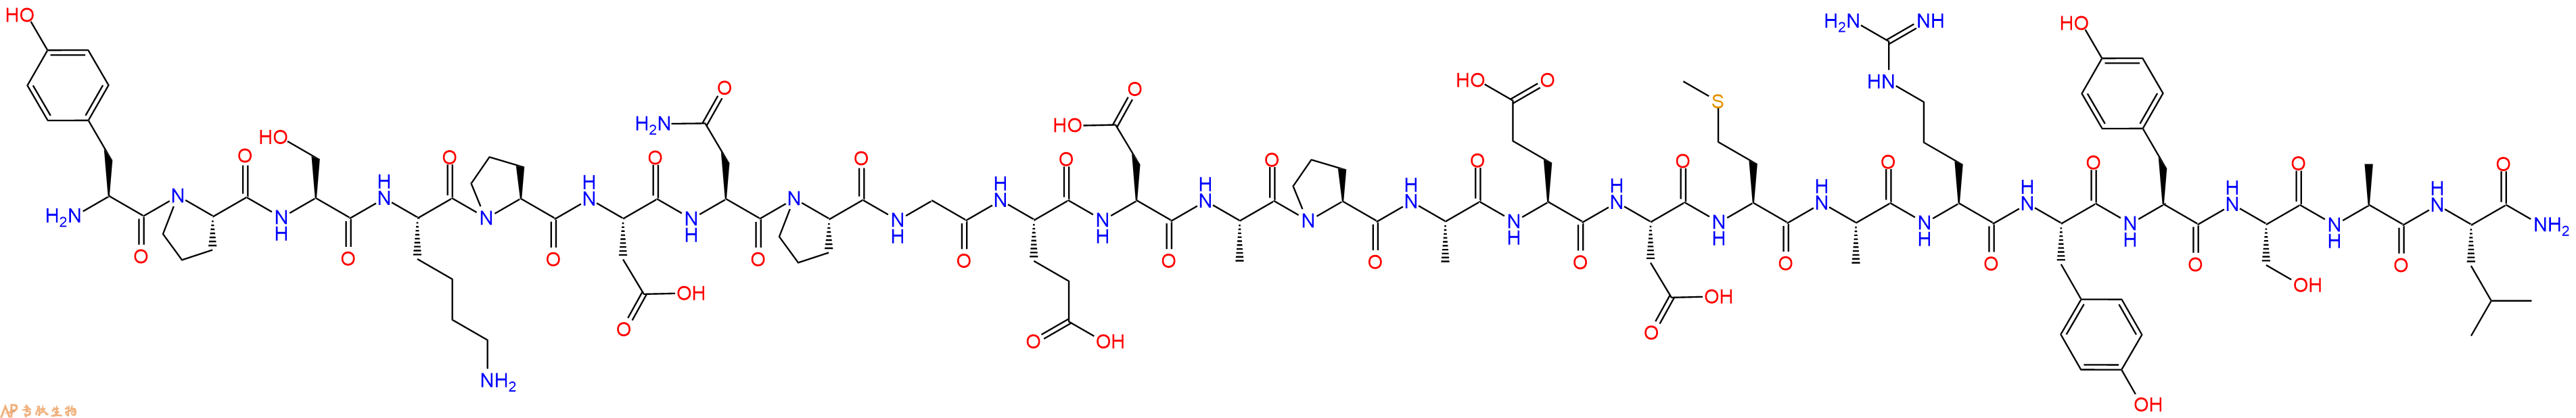 专肽生物产品神经肽Y Neuro Peptide Y(1-24), human131448-51-6